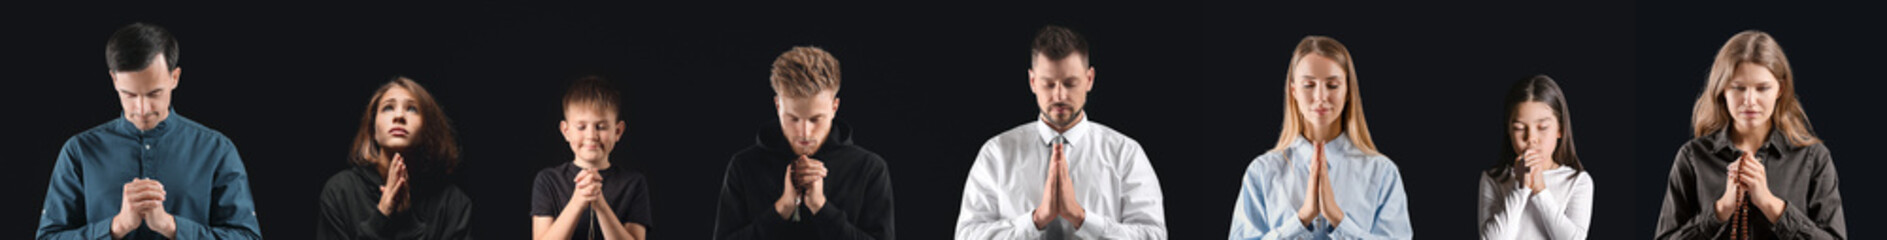 Set of praying people on dark background